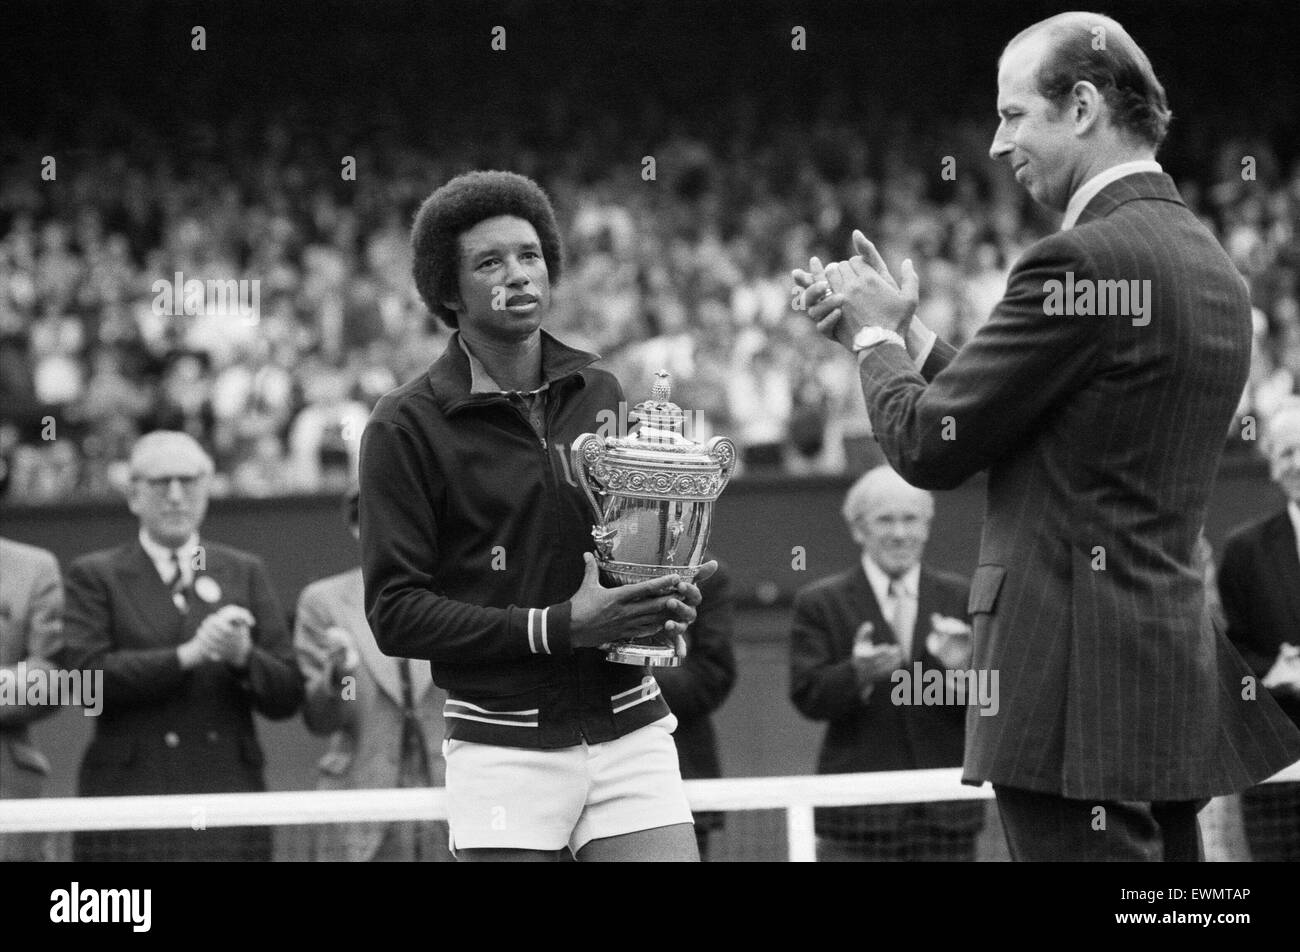 Arthur Robert Ashe, Jr., (10 juillet 1943 - 6 février 1993) était un monde no 1 joueur de tennis professionnel Ashe, un Afro-américain, a été le premier joueur noir sélectionné pour l'équipe de Coupe Davis des États-Unis et le seul homme noir à remporter le péché Banque D'Images